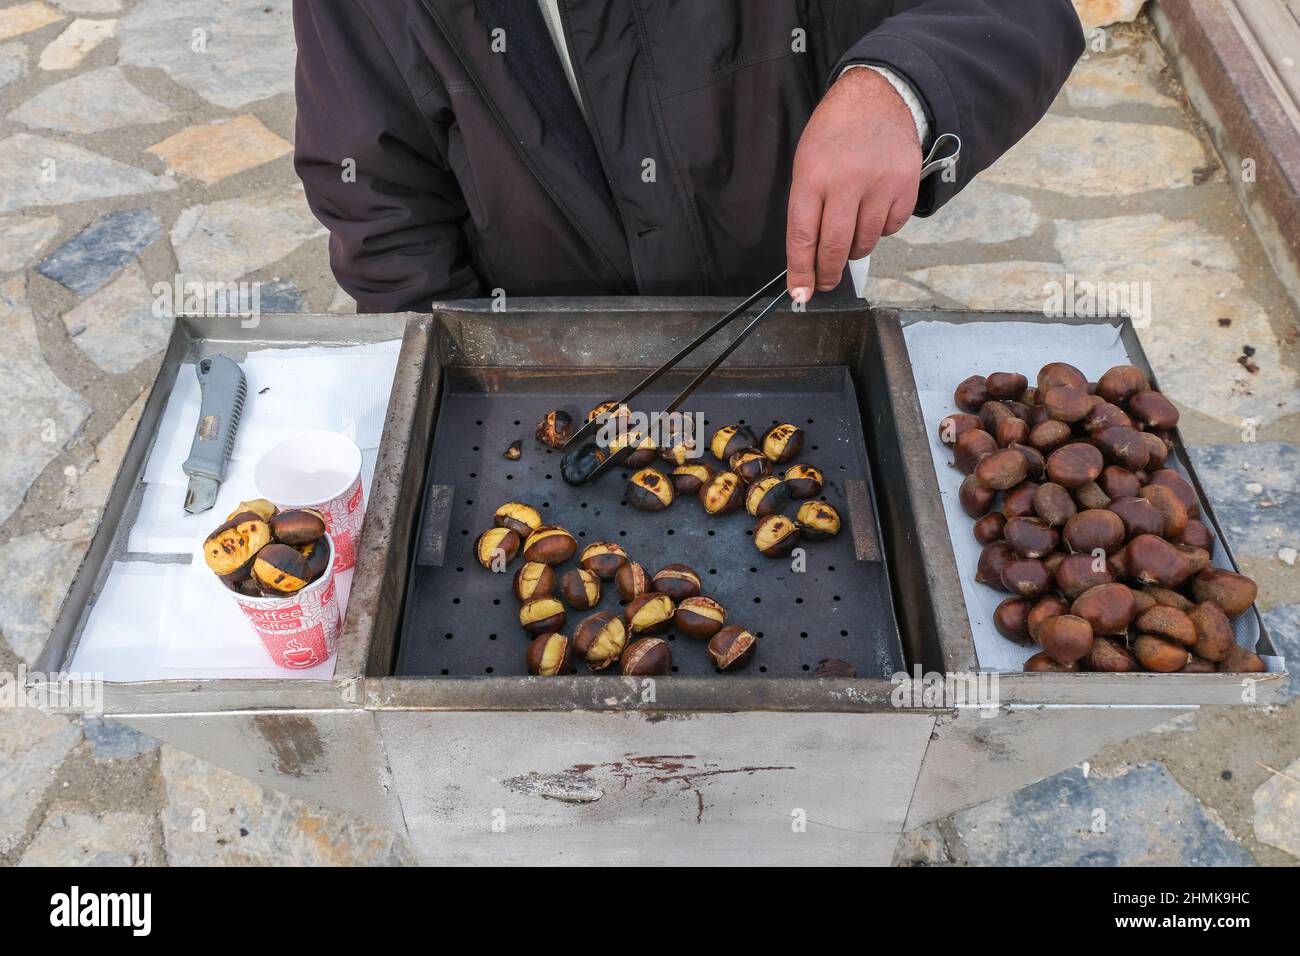 Homme vendant à la main des châtaignes traditionnelles dans une rue, des châtaignes fraîchement cuites de la cuisine turkısh, marché de rue, cuisine turque et concept de cuisine. Banque D'Images